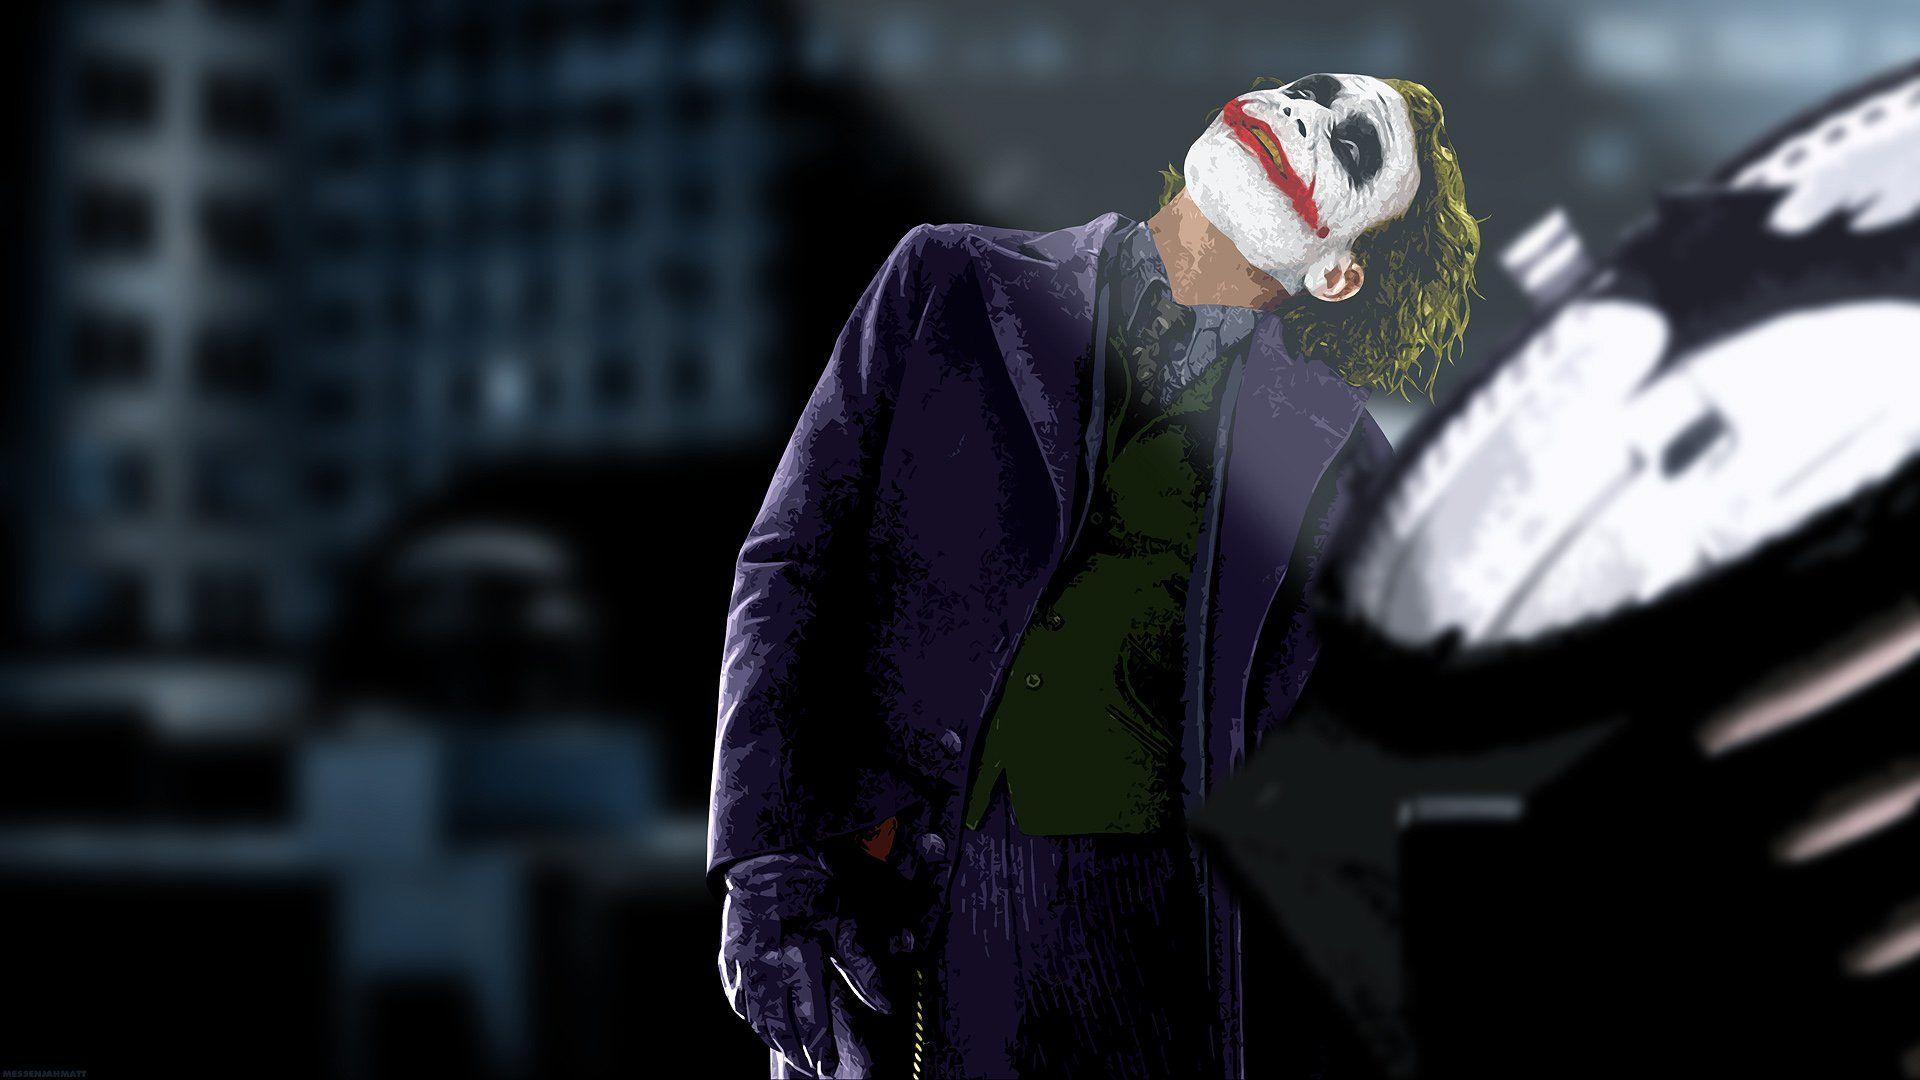 The Joker The Dark Knight wallpaperx1080